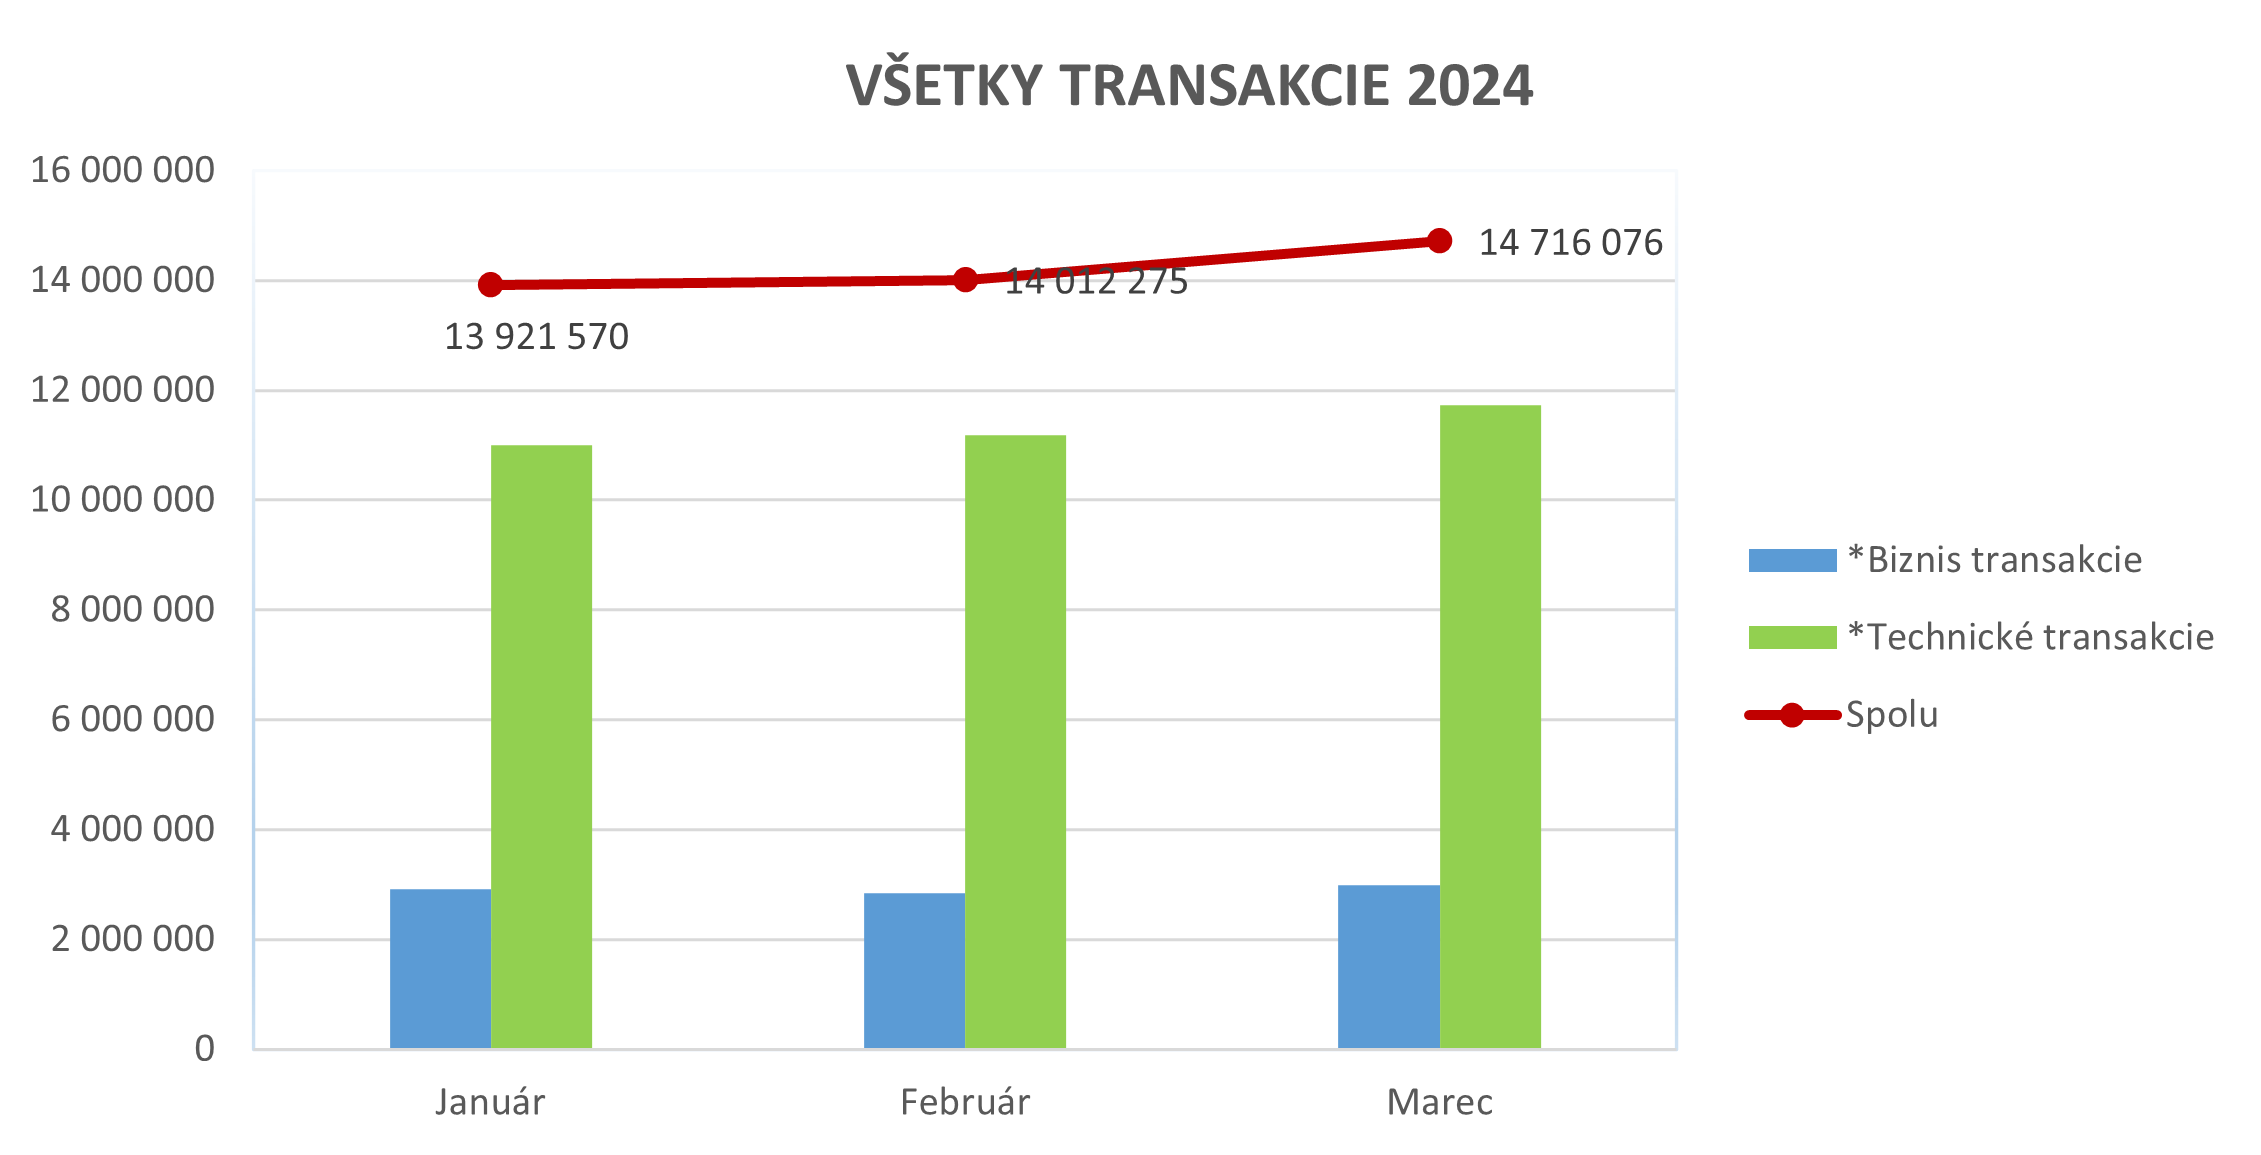 Ilustračný stĺpcový graf zobrazujúci všetky transakcie za rok 2024.